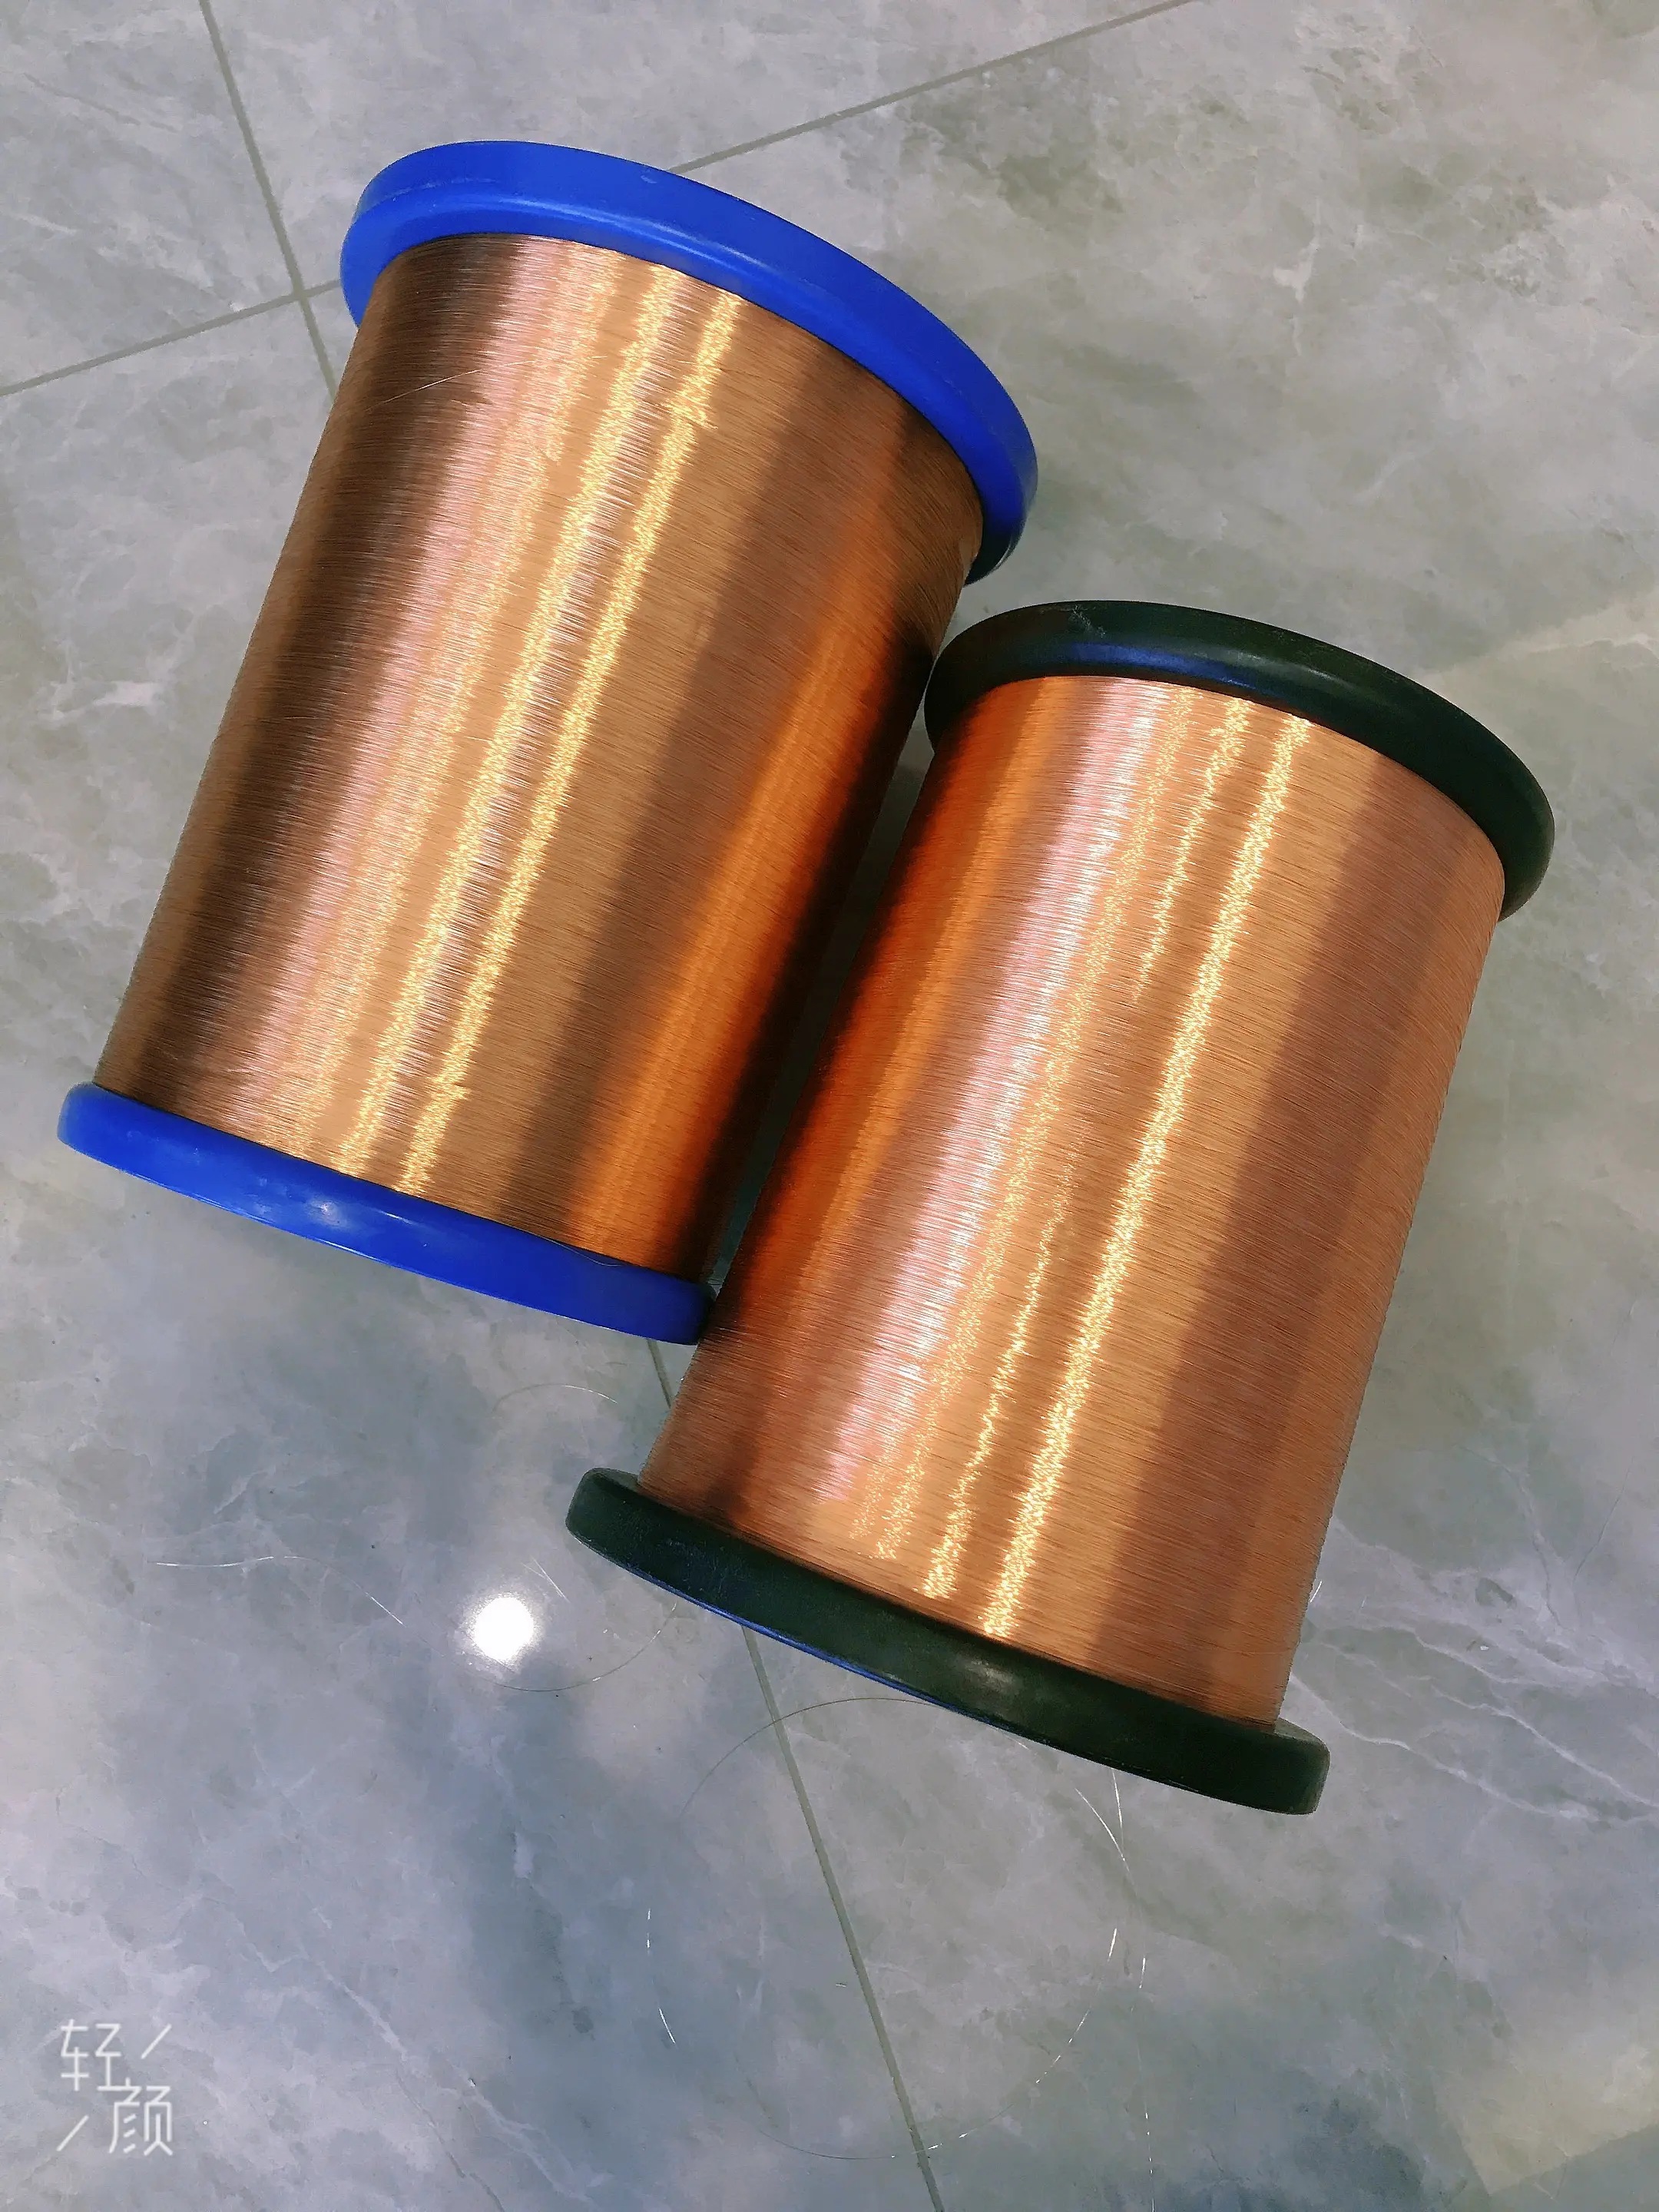 Bobine de fil électrique en cuivre et aluminium émaillé, pour tressage, classe 155, 180, 200